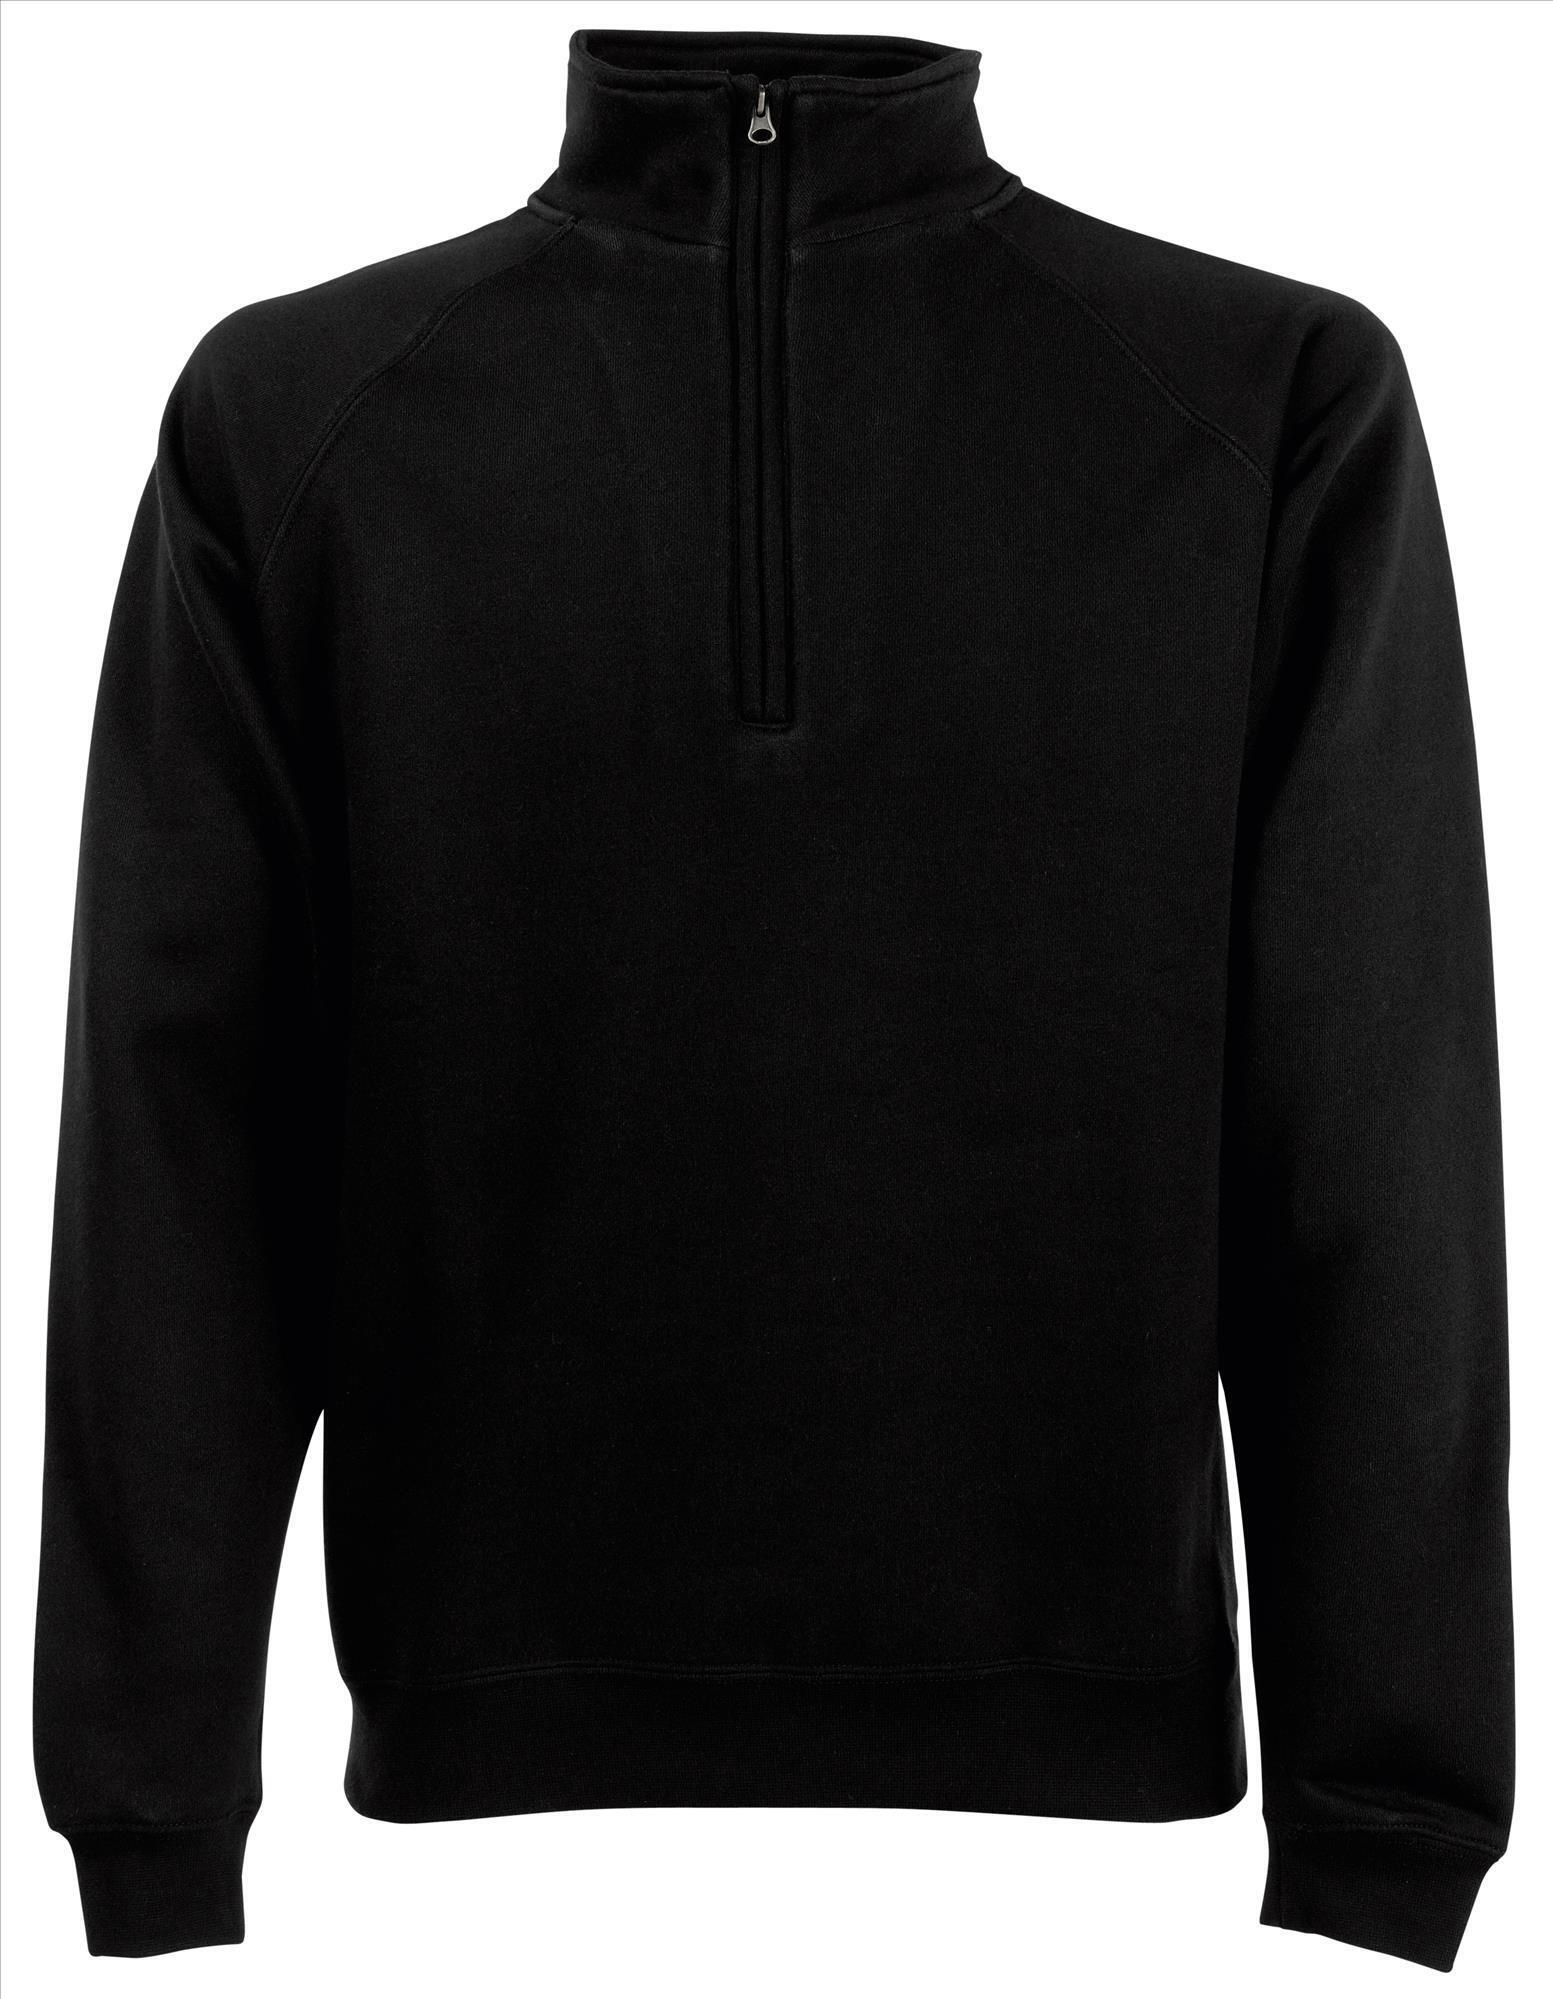 Sweater voor hem in de kleur zwart te personaliseren